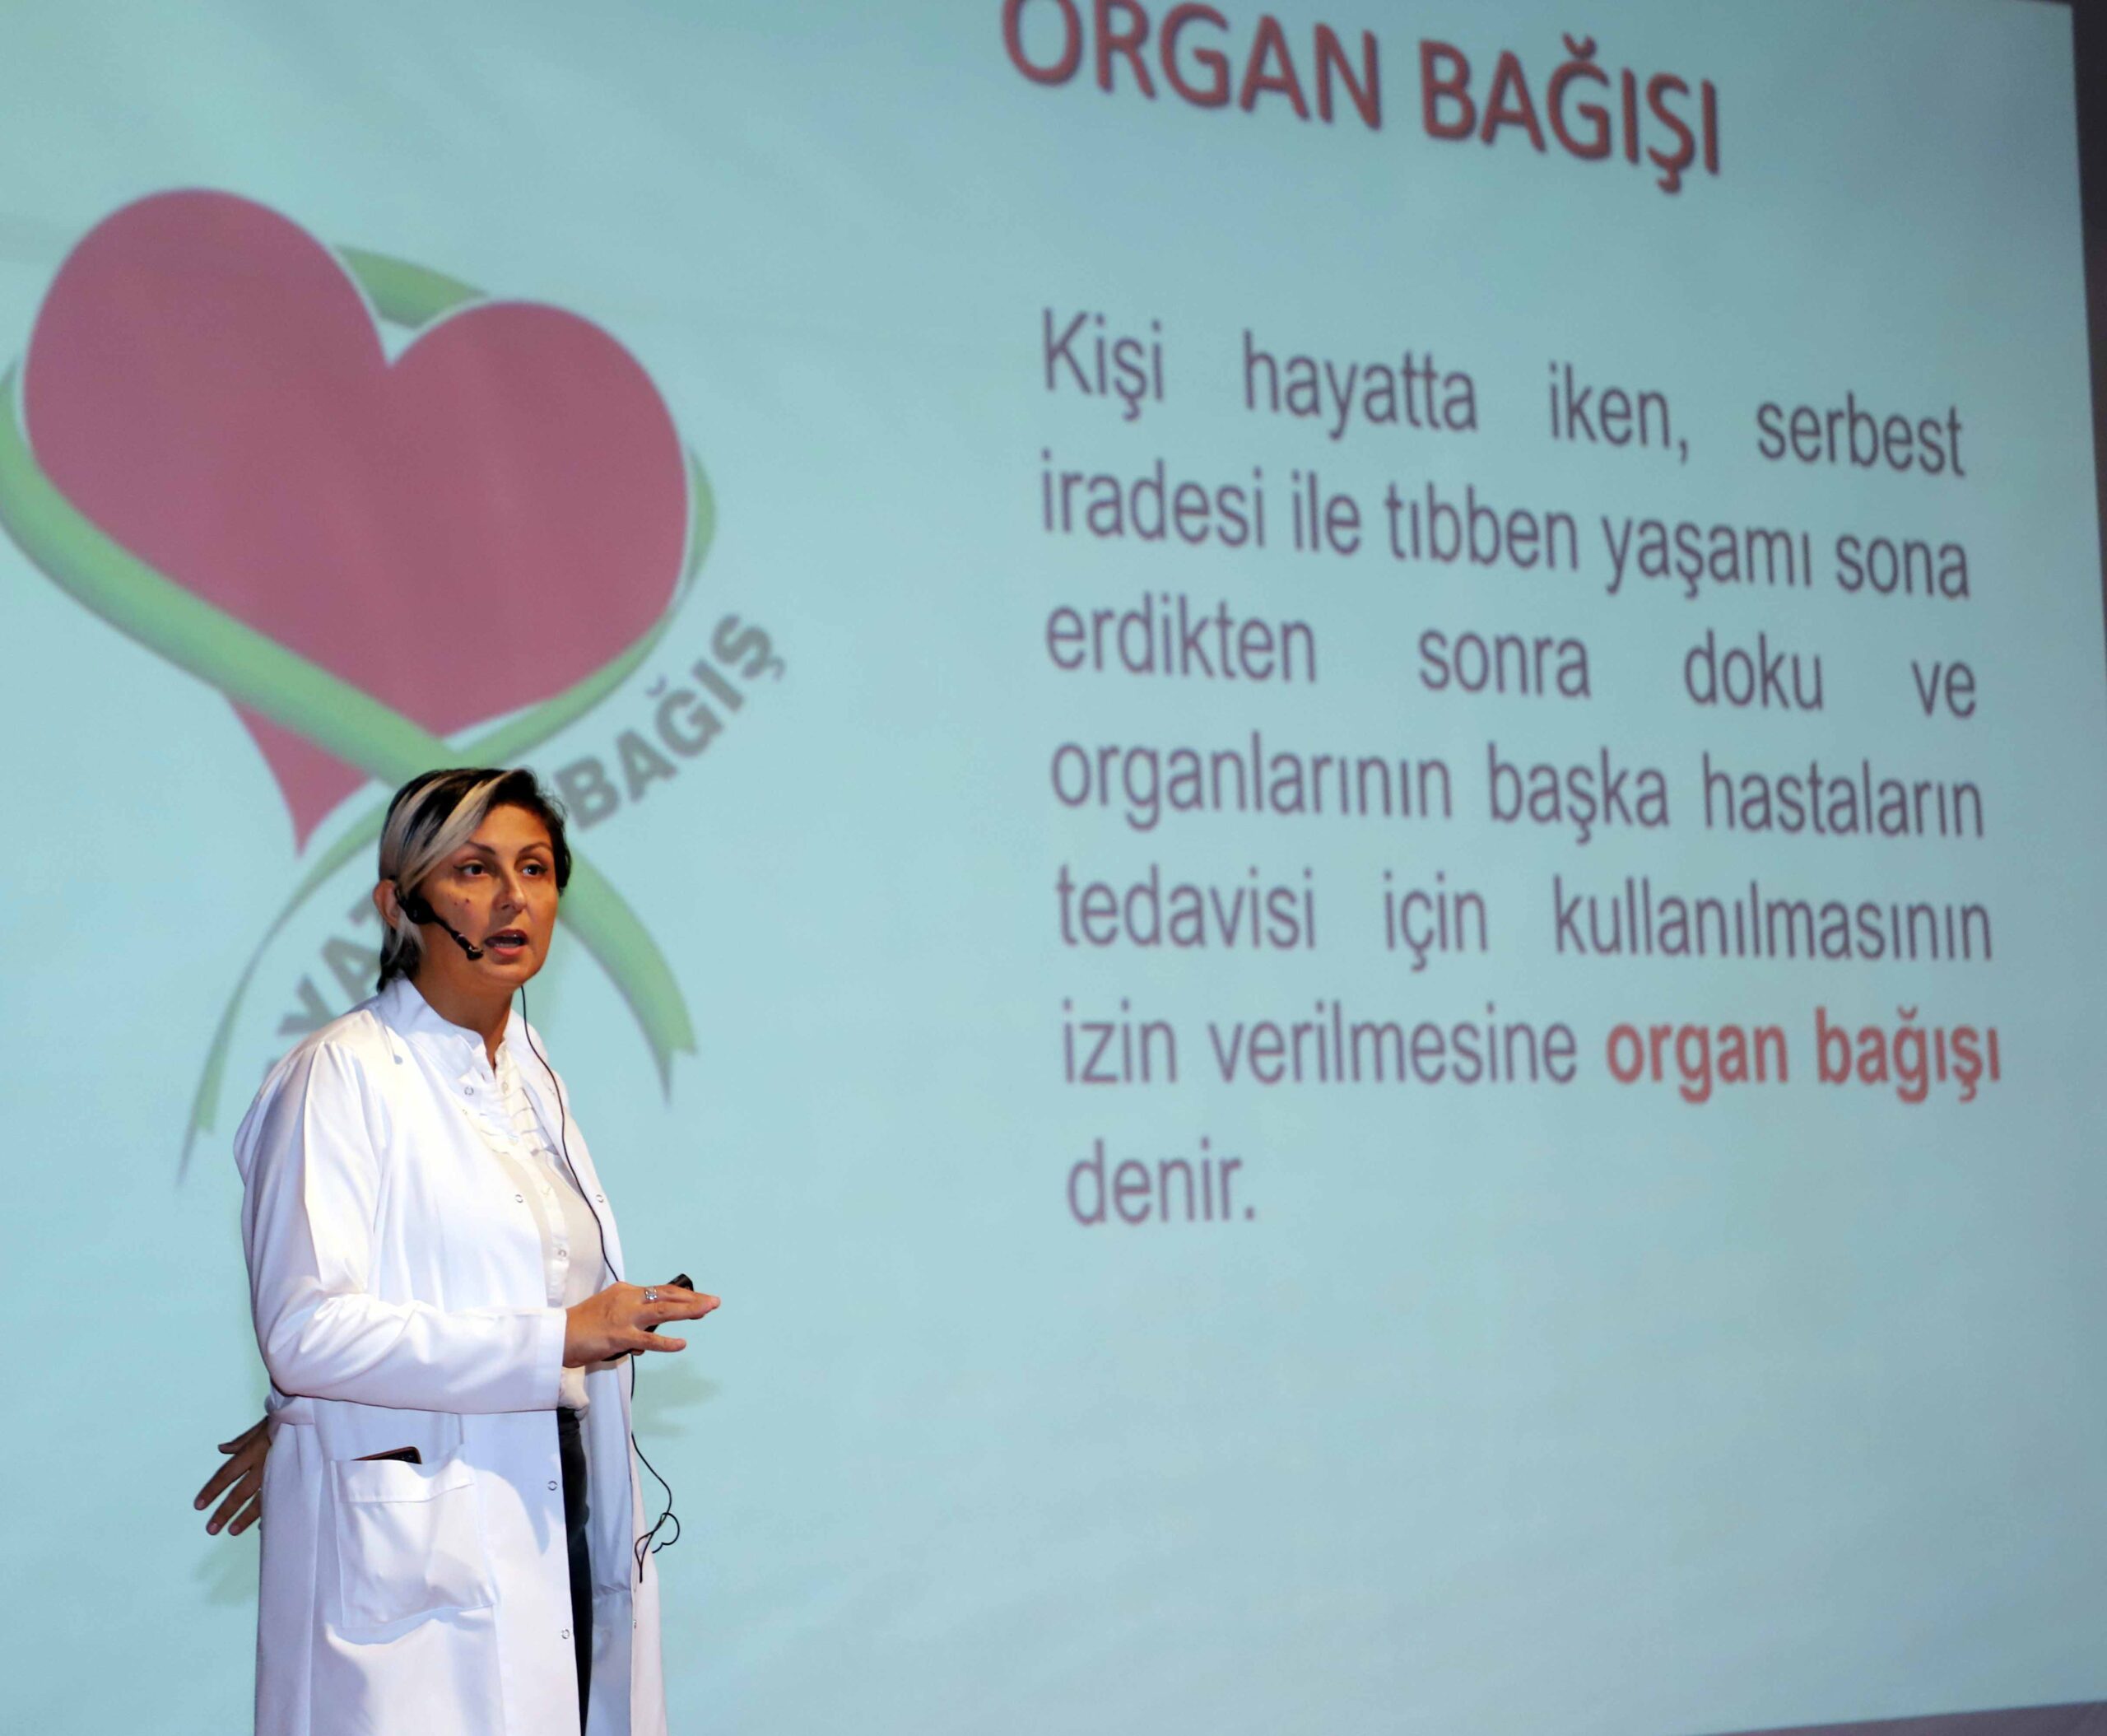 SANKO Üniversitesi Hastanesi’nde “Organ bağışı bilgilendirme toplantısı”